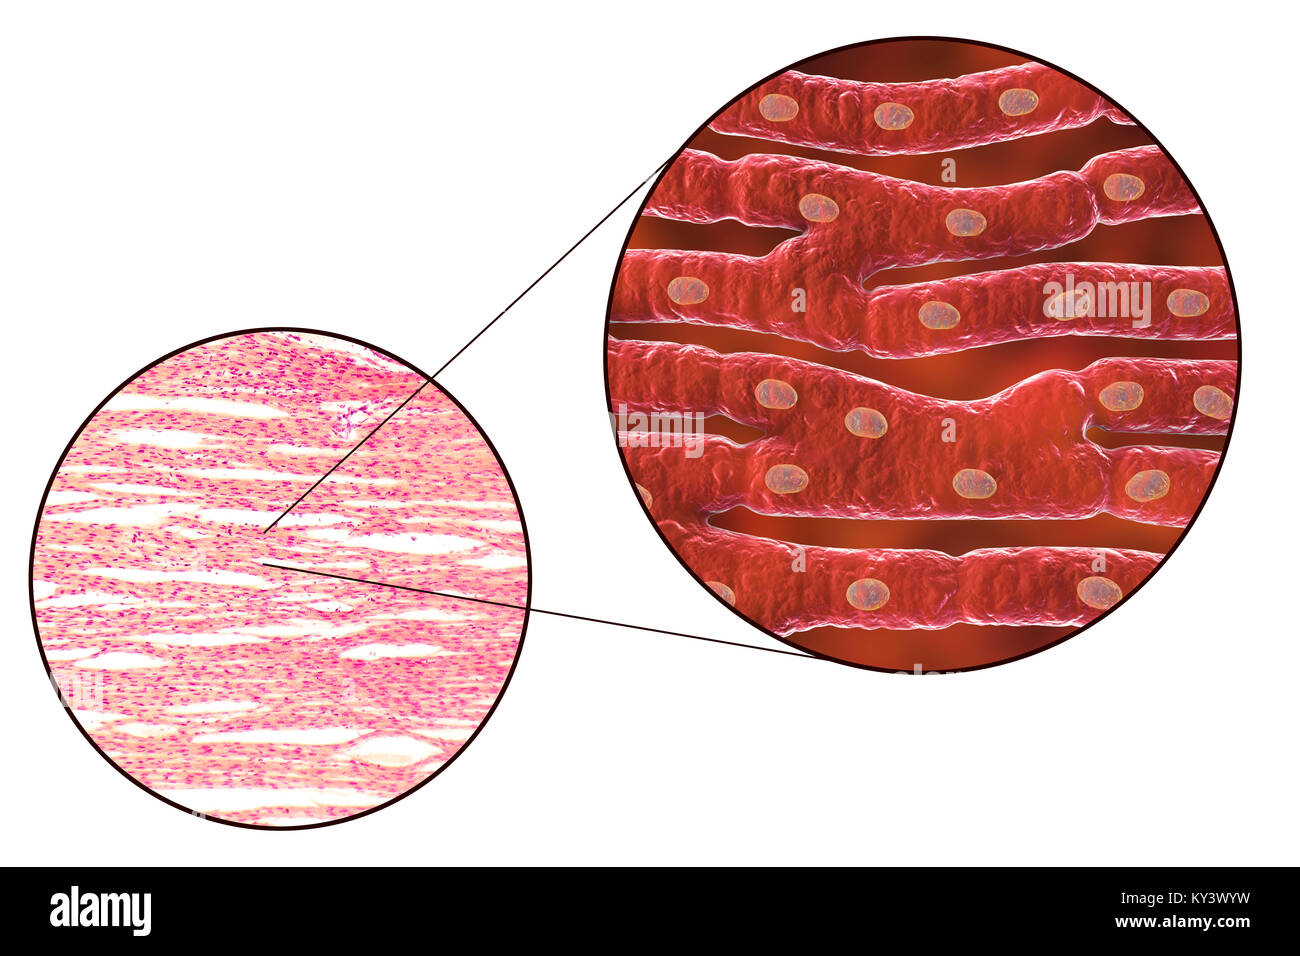 Cuore la struttura muscolare, computer illustrazione e micrografia di luce. Il muscolo del cuore è composto da a forma di fuso cellule raggruppate in fasci irregolari. I confini tra le singole celle sono debolmente visibile qui. Ogni cella contiene un nucleo, visibile come un tinto scuro spot. Il muscolo cardiaco è un settore specializzato in tessuto muscolare che può contrarsi regolarmente e in modo continuo senza stancarsi. Foto Stock